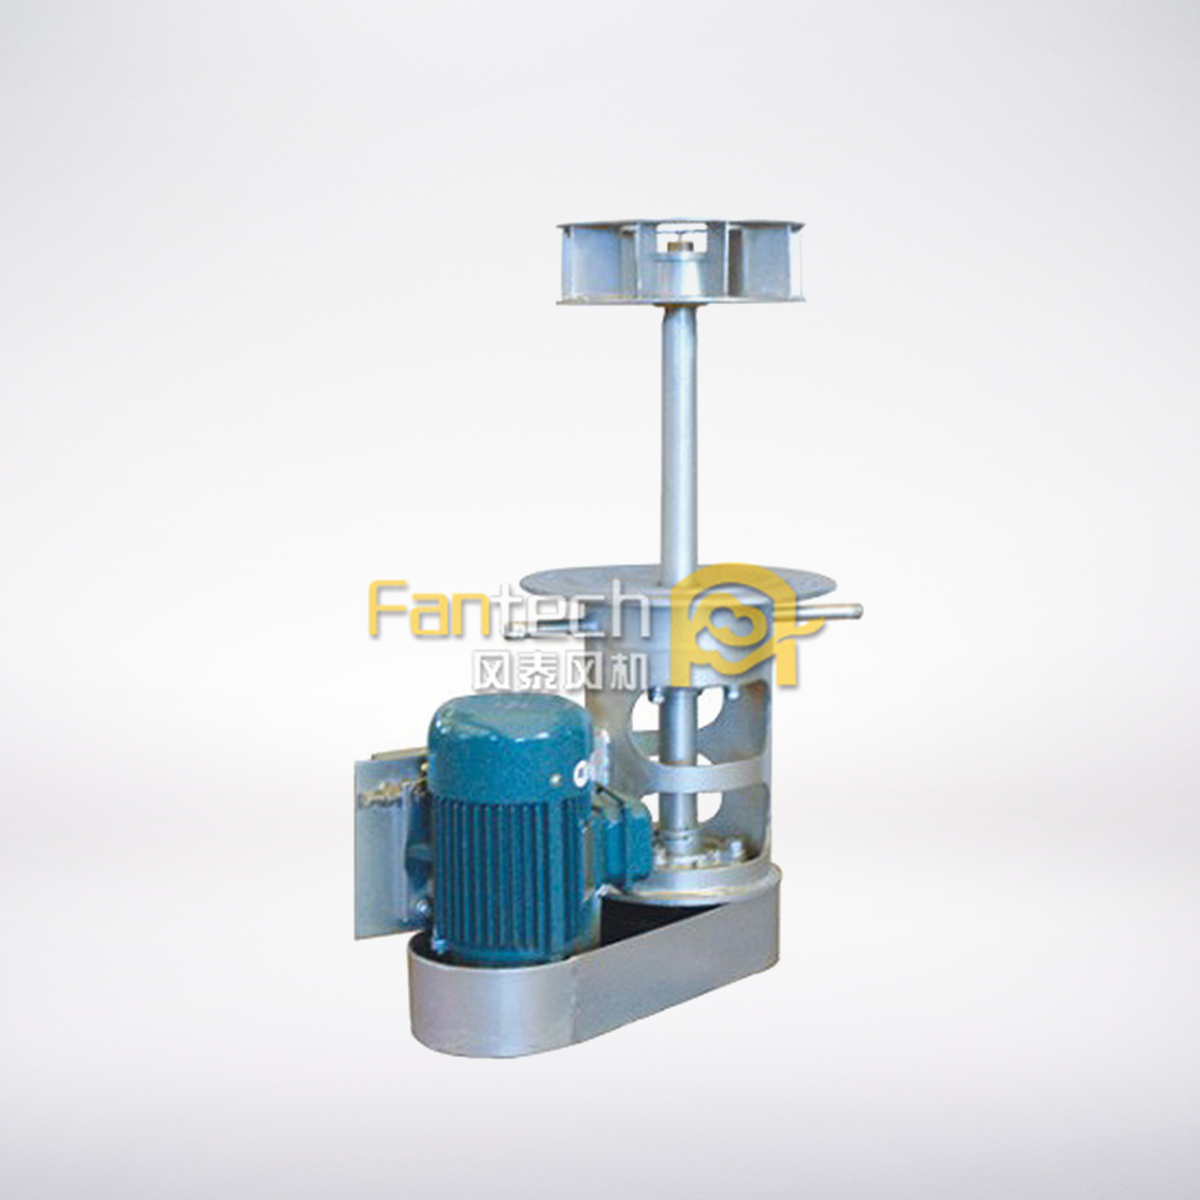 FT mold furnace vertical fan